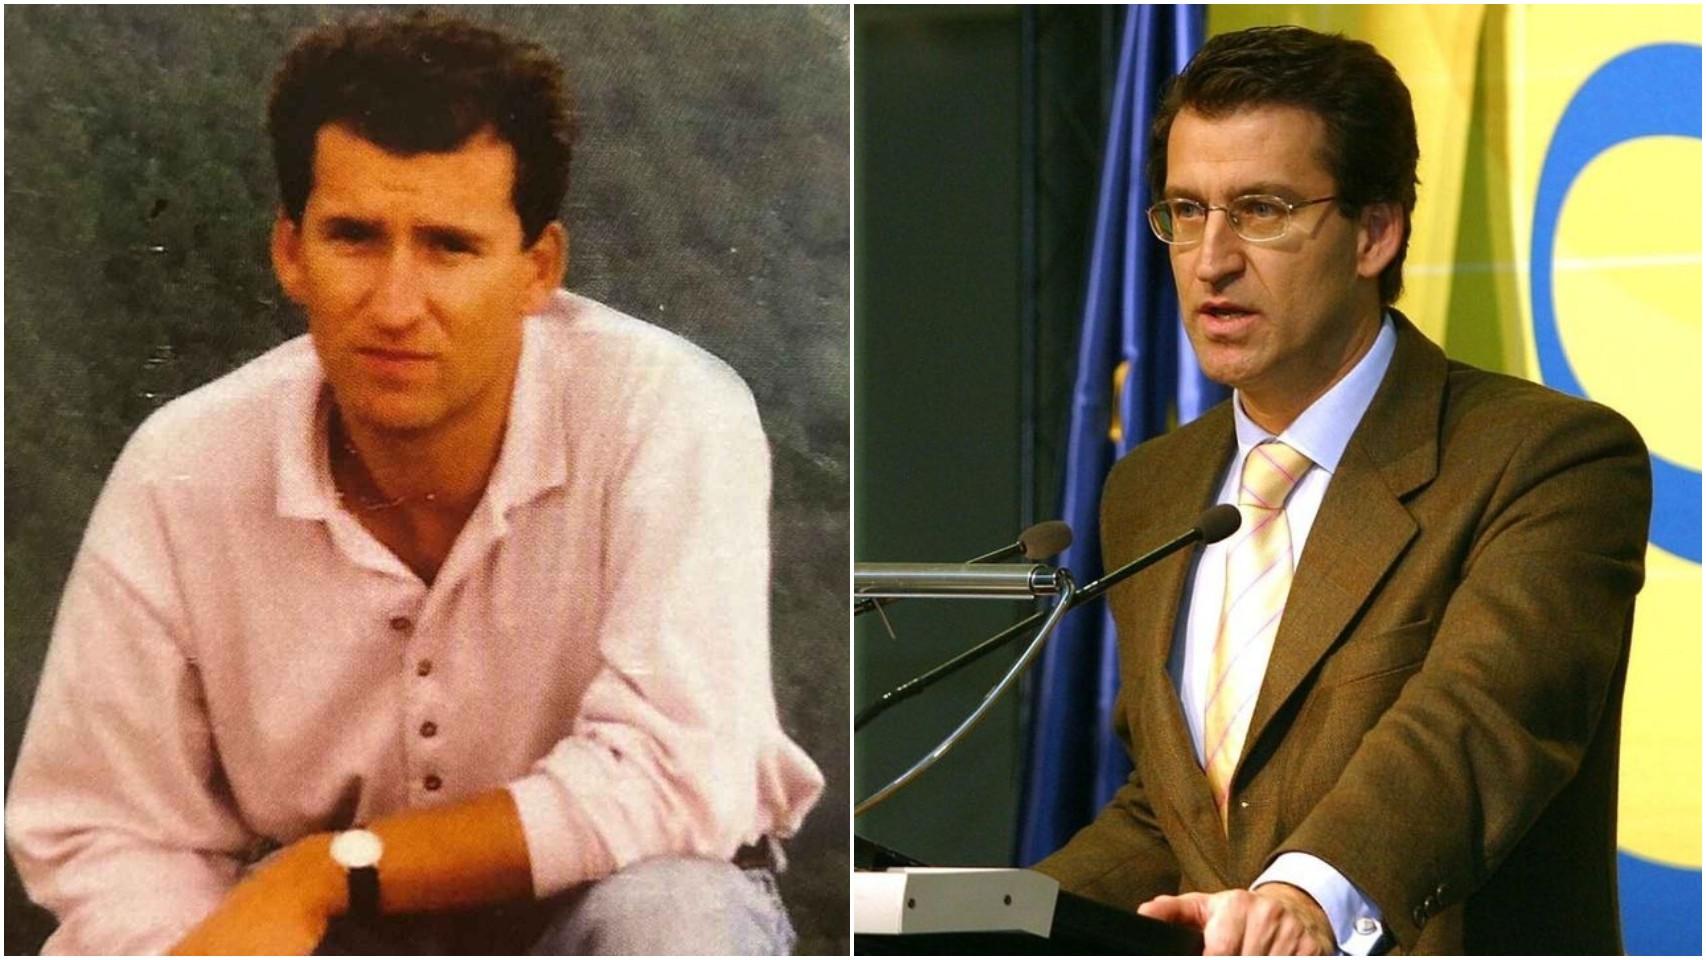 A la izquierda, una imagen de Alberto Núñez Feijóo durante su juventud. A la derecha, el líder del PP durante su etapa en Correos.